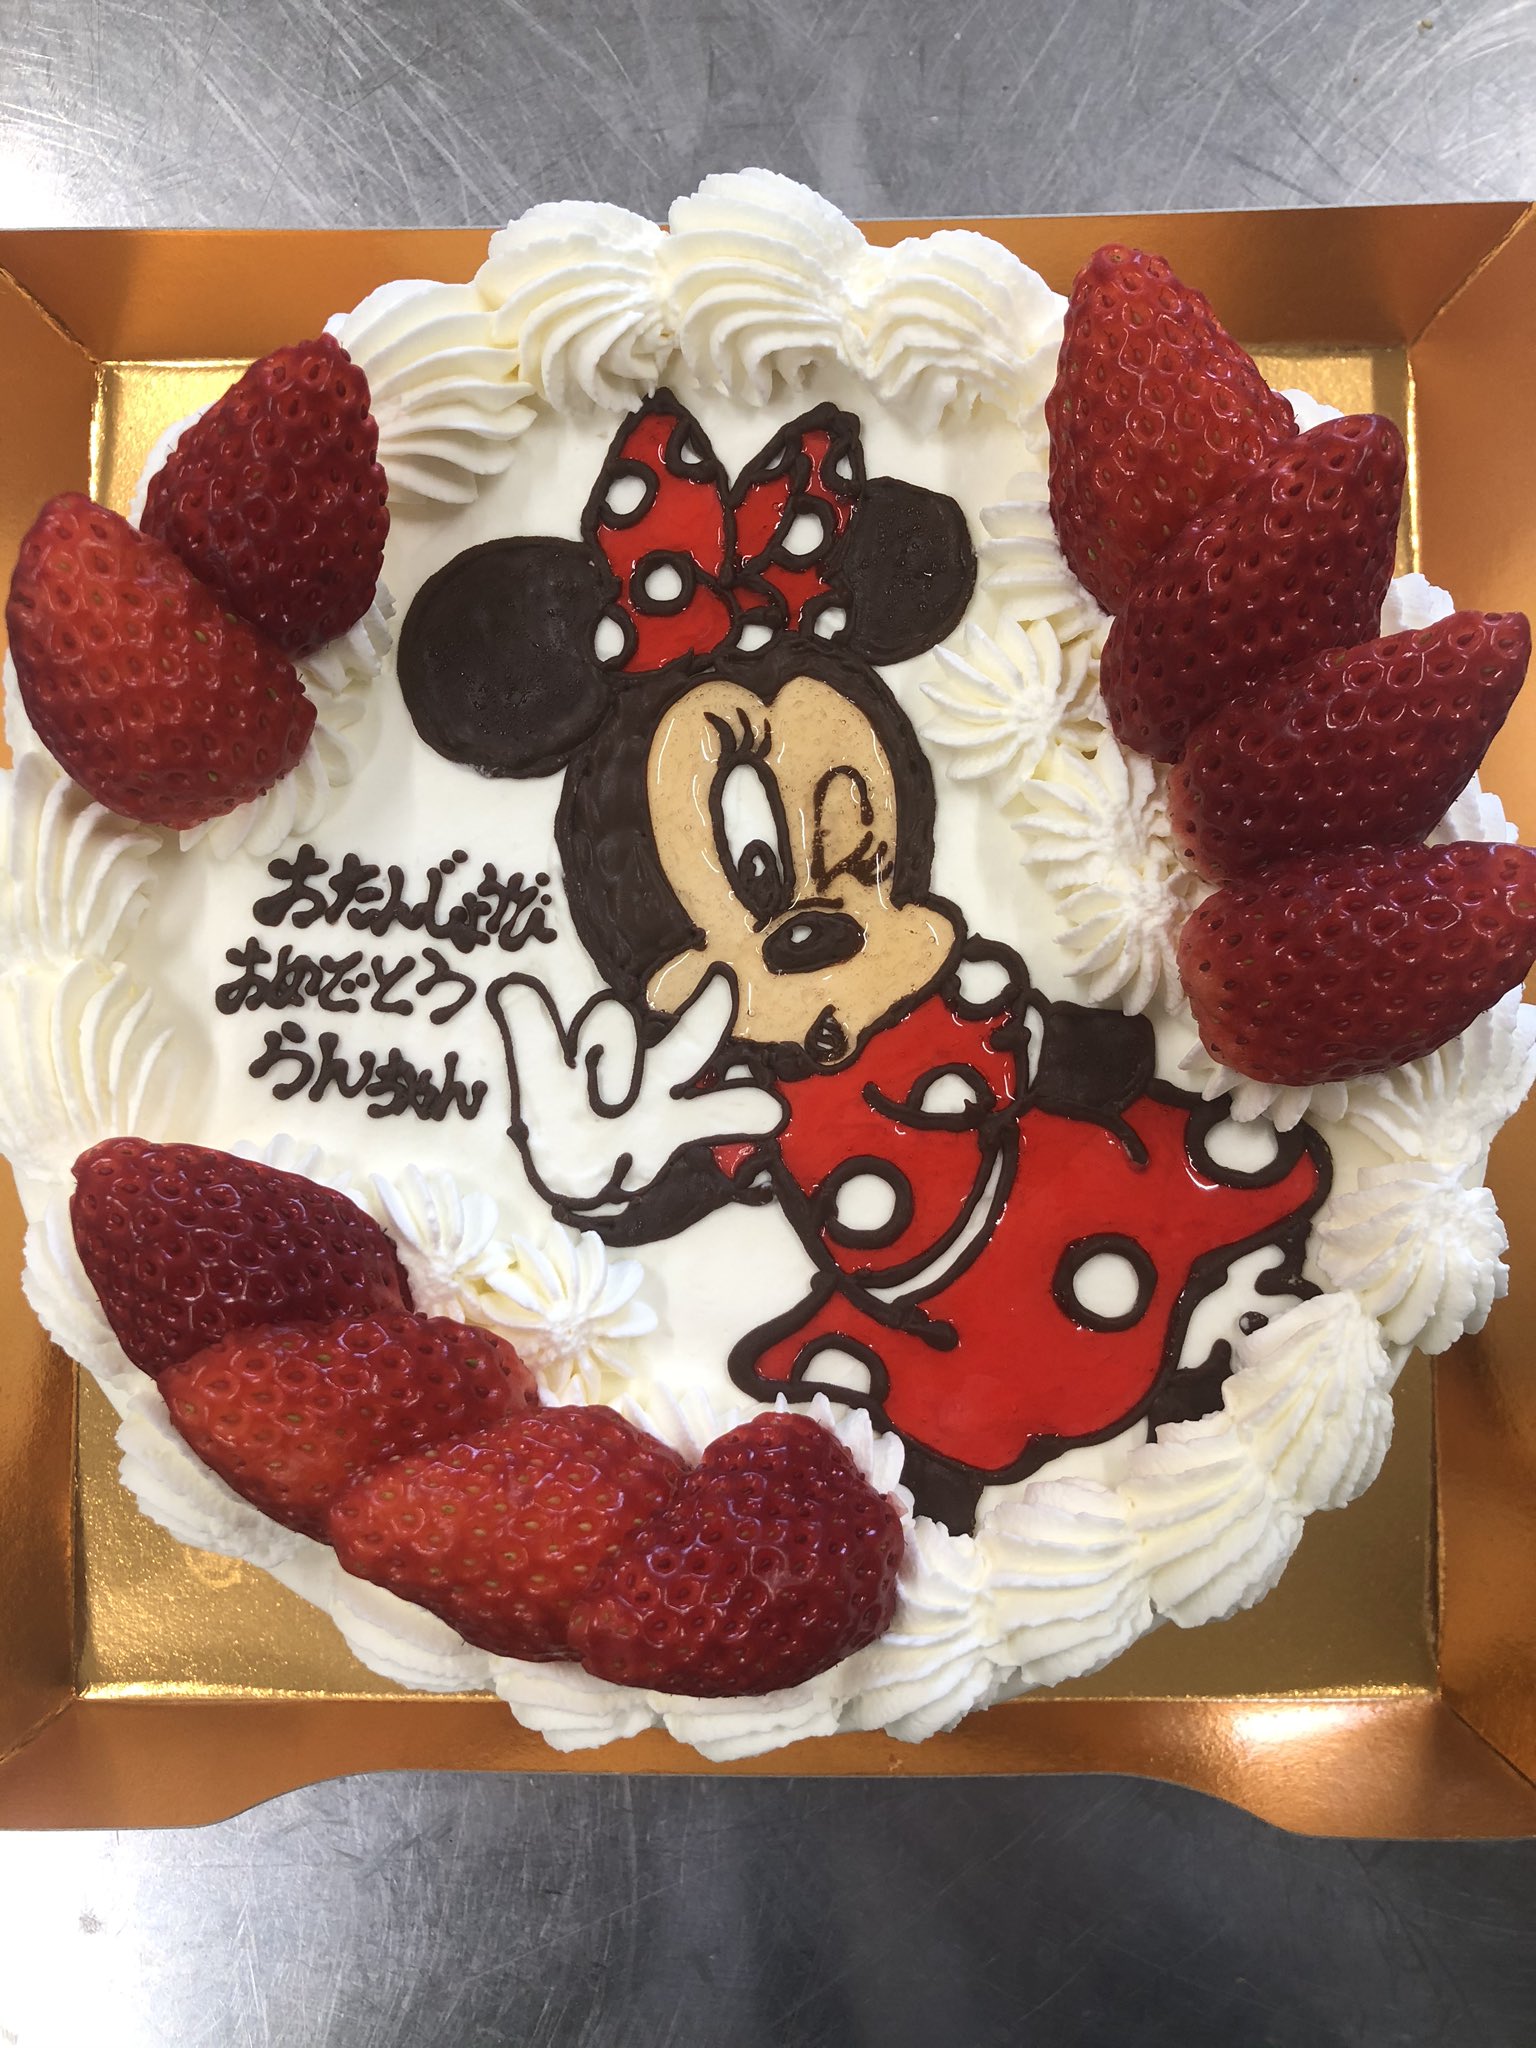 Patisserie Galette Twitterren 本日ご紹介しますデコレーションケーキは 先日受け渡しのキャラクターケーキです お 誕生日おめでとうございます イラストはディズニーキャラクターの ミニーマウスです 大事なお子さんの誕生日にガレットのキャラクターケーキは